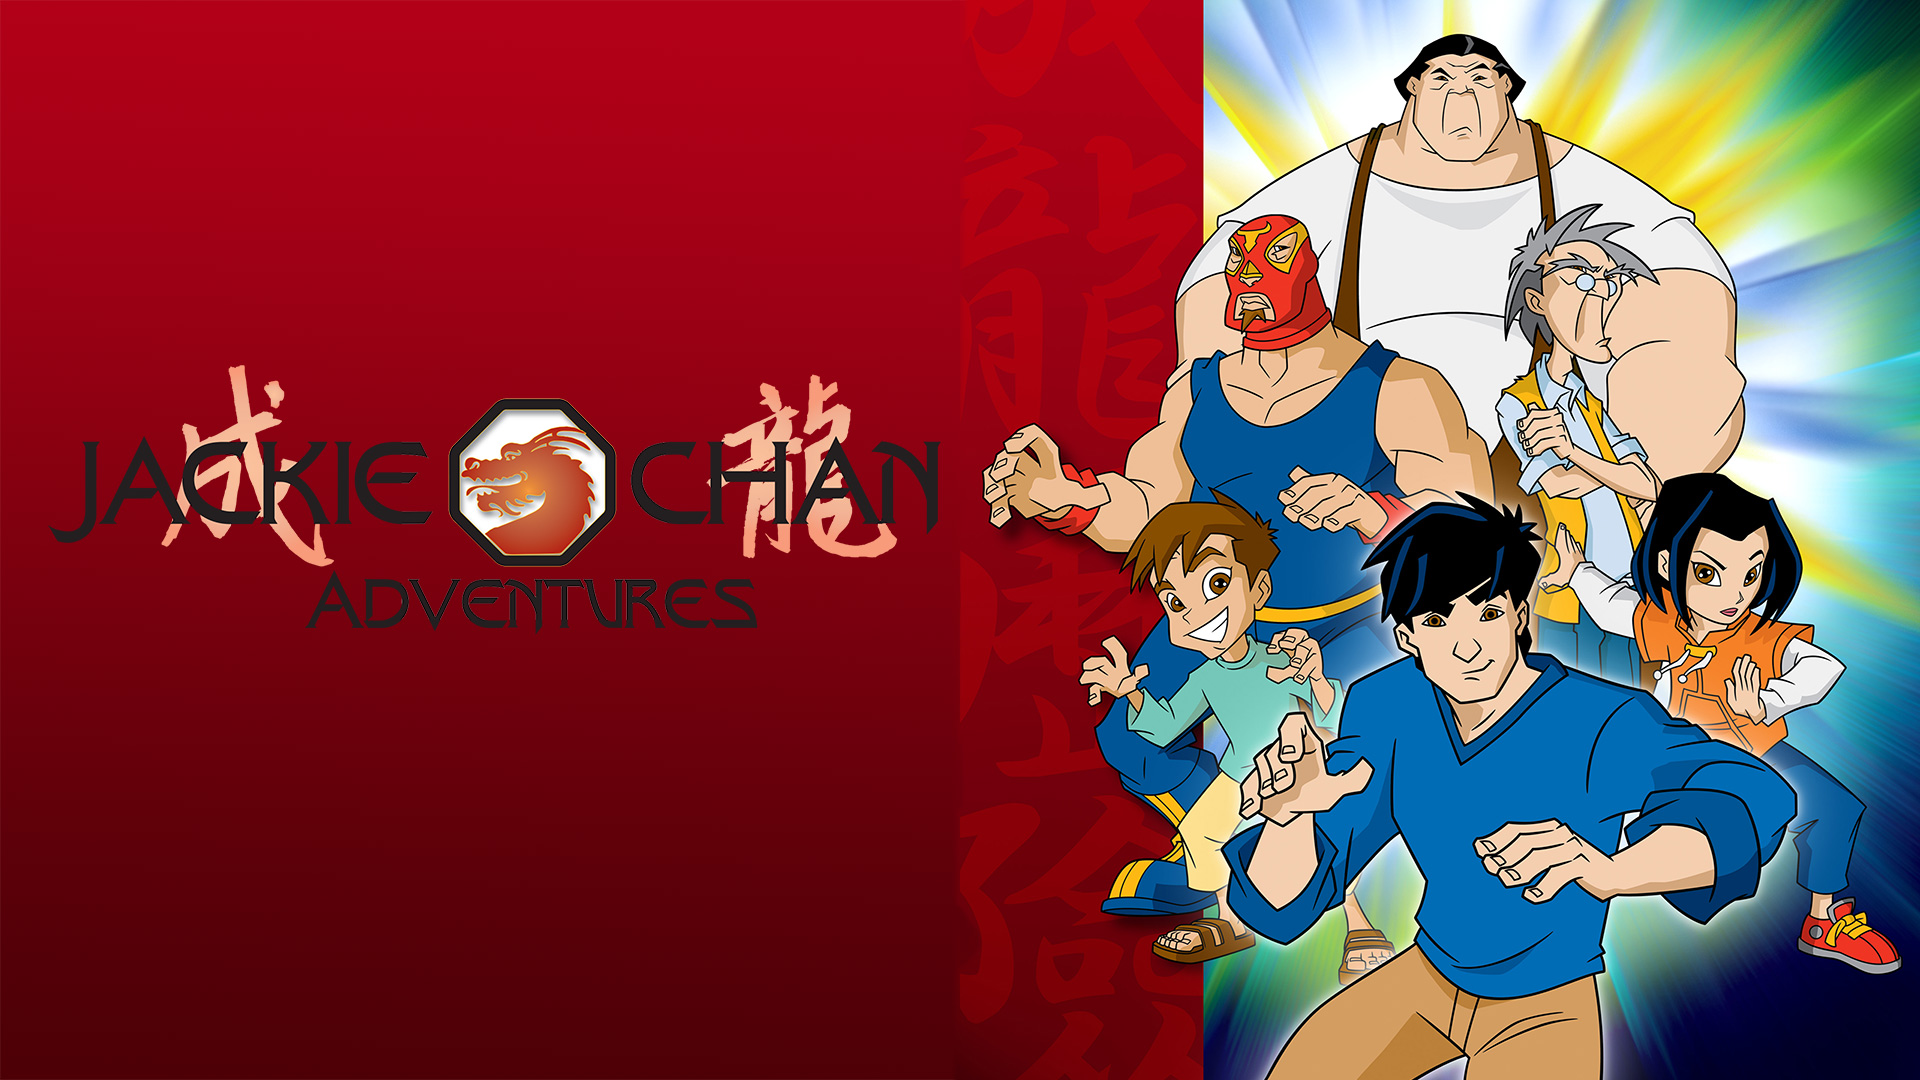 Jackie Chan Adventures - Watch Series Online